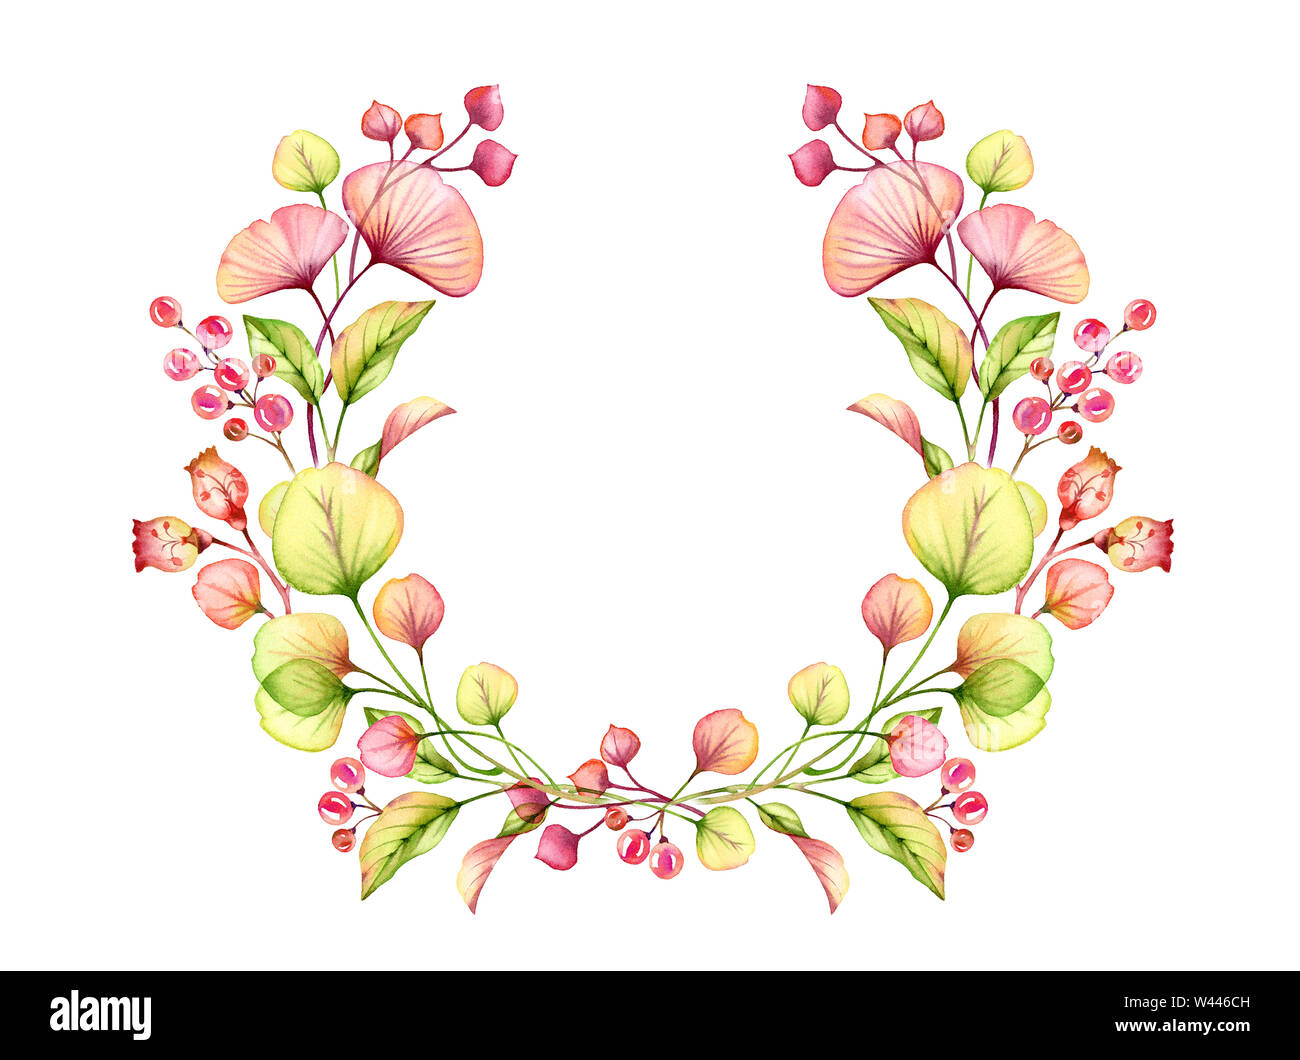 Arrangement floral Transparent aquarelle couronne ronde de petits fruits, feuilles, branches en rose pastel, corail rouge orange vert illustration botanique Banque D'Images